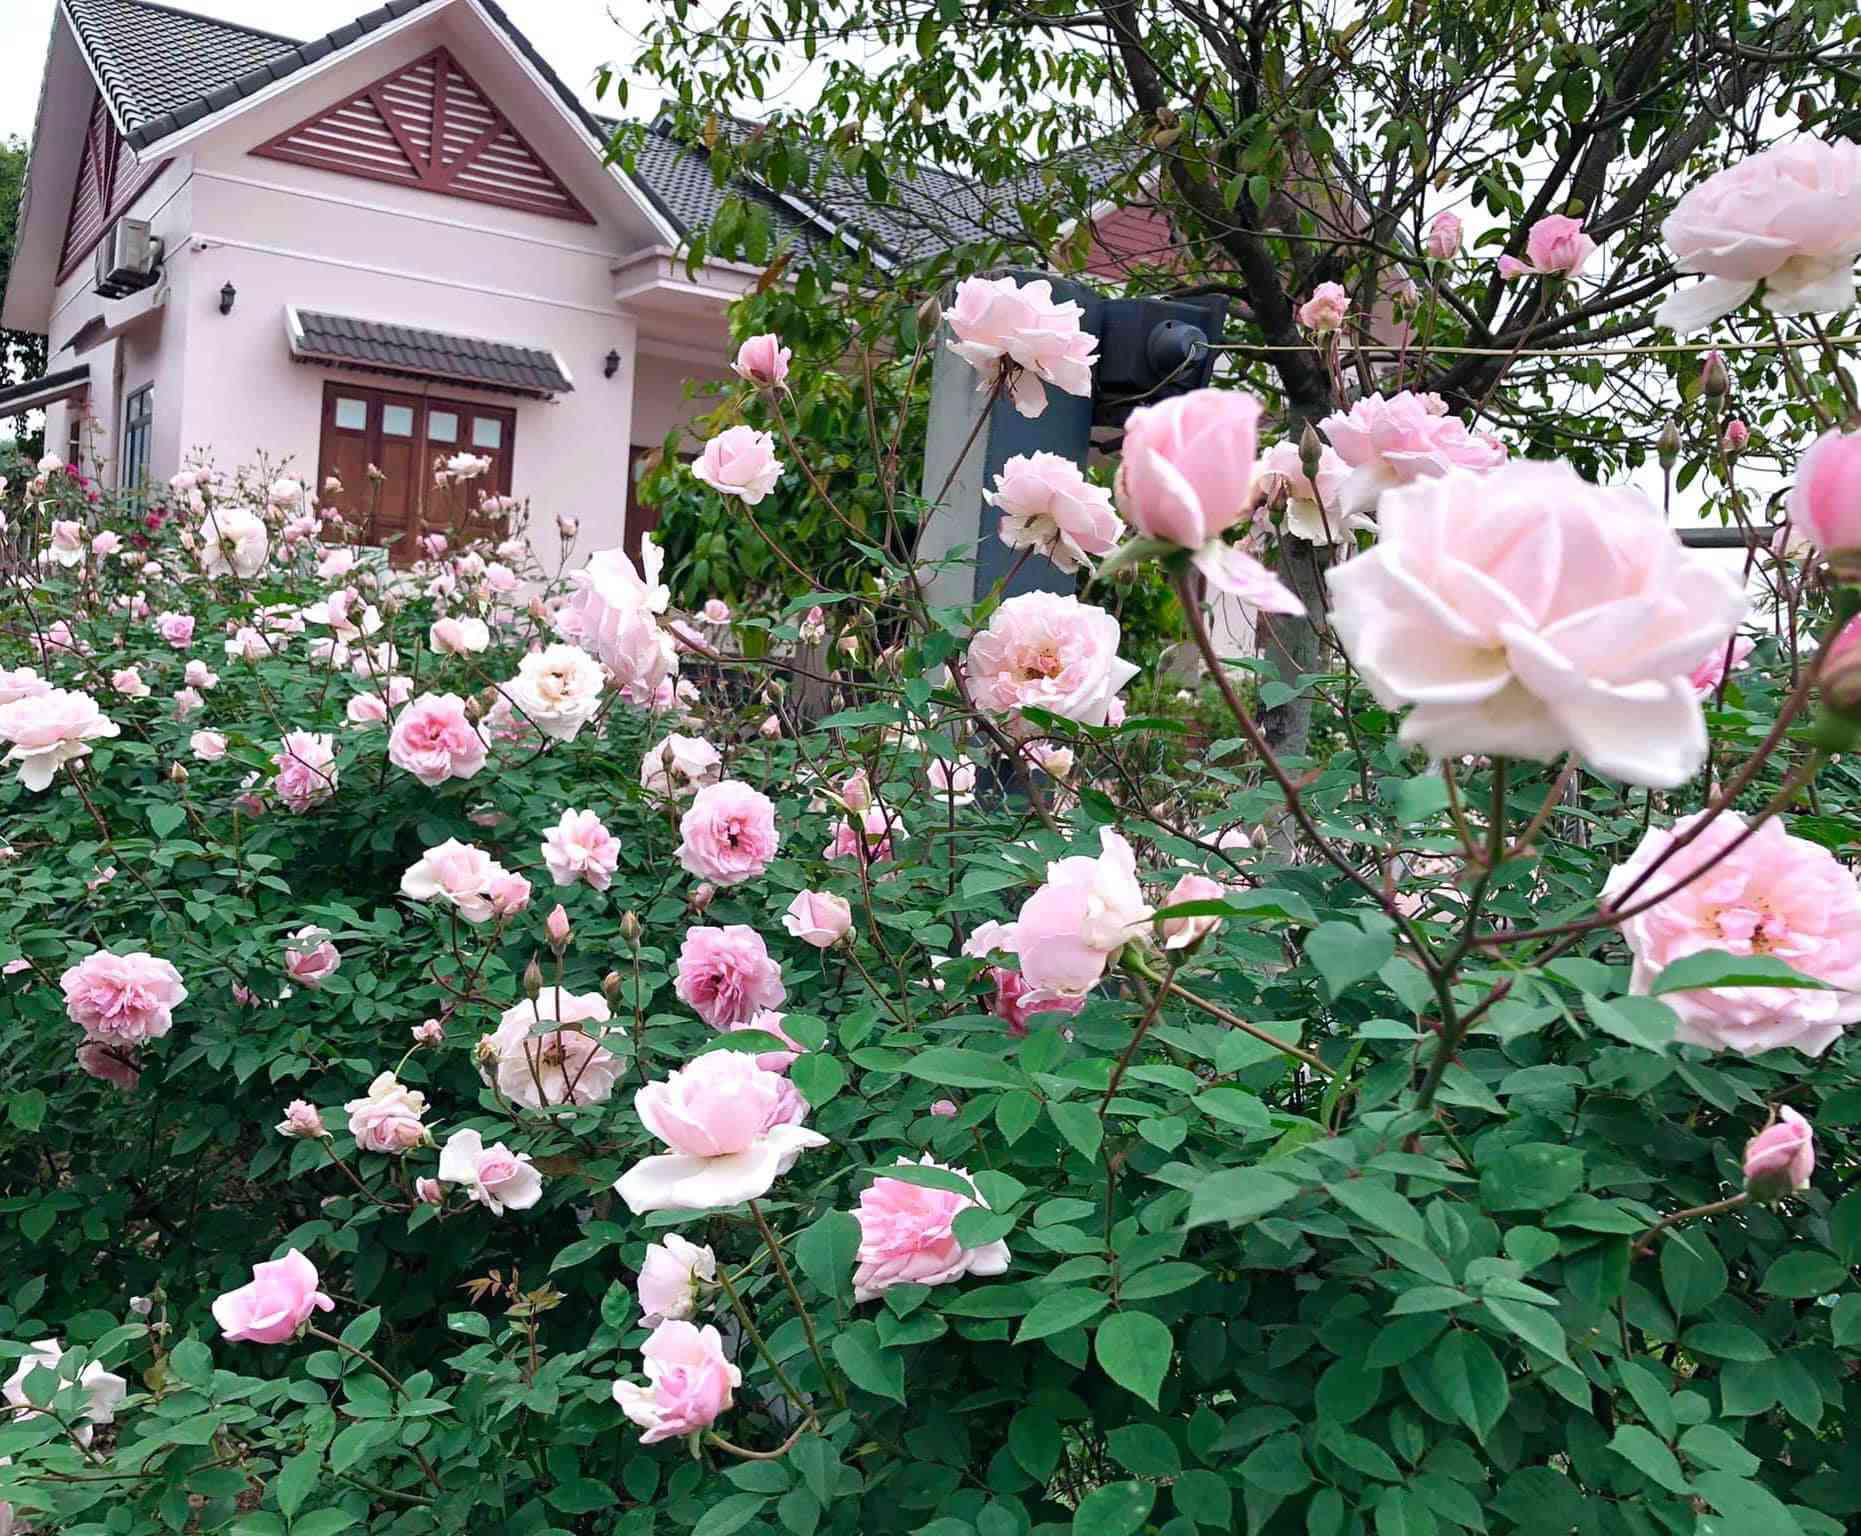 Căn nhà tràn ngập hoa hồng ở Ba Vì gây amp;#34;bãoamp;#34; mạng - 6 - kythuatcanhtac.com